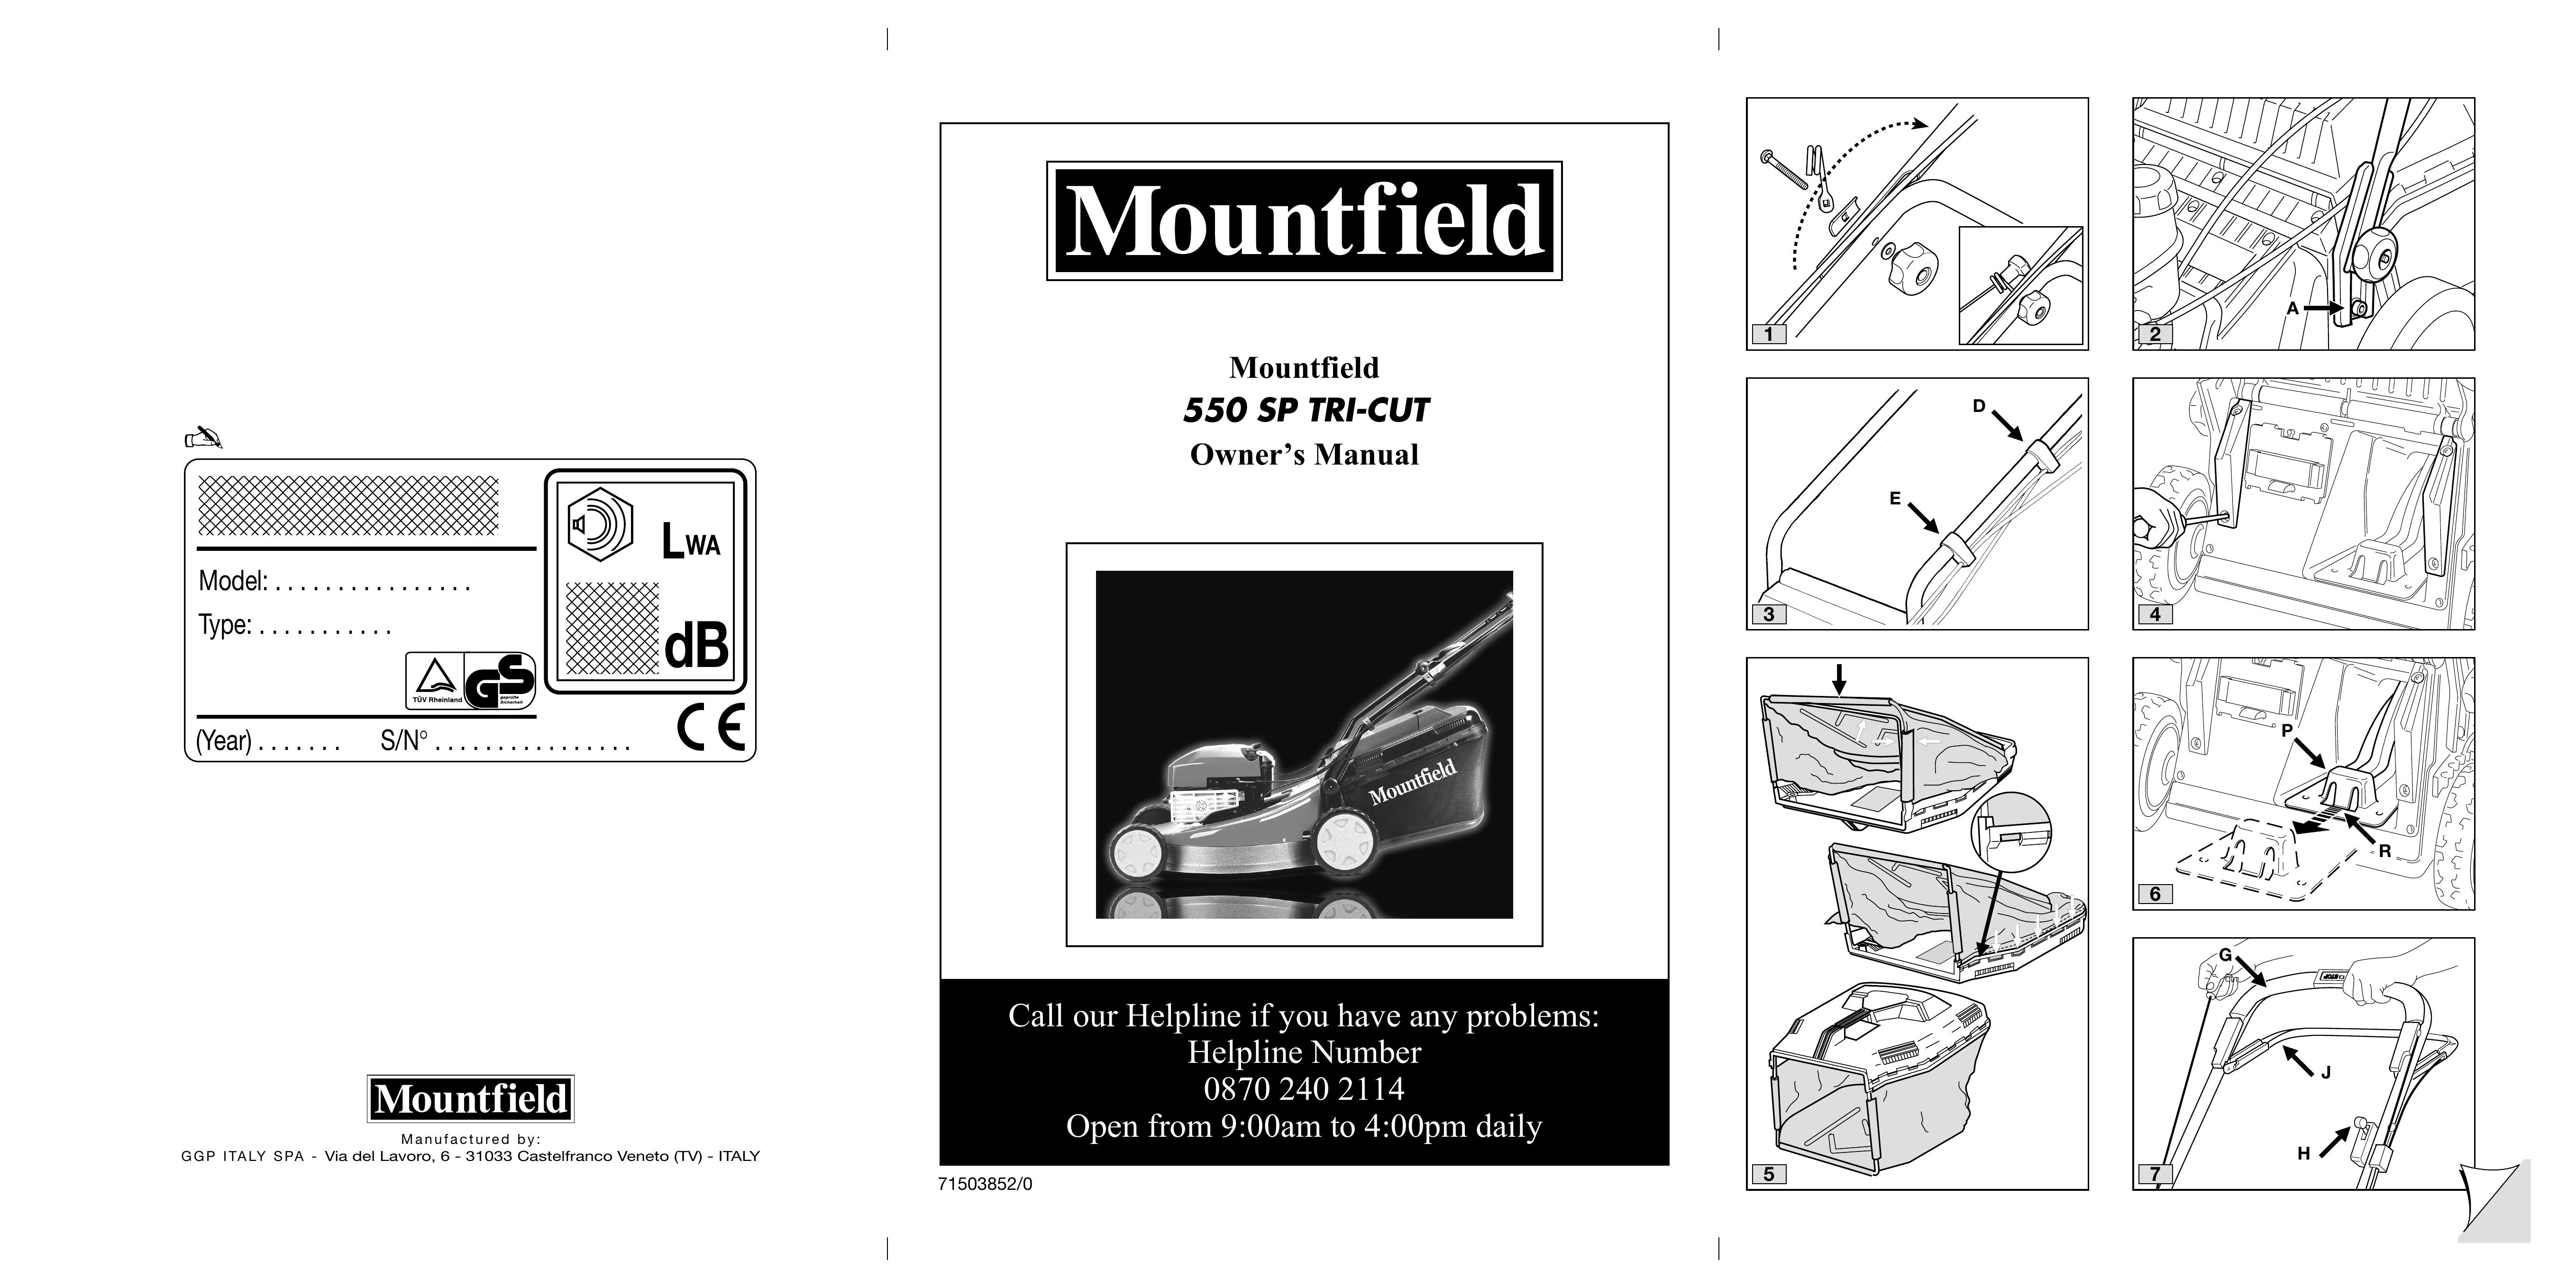 Mountfield 550 SP Lawn Mower User Manual